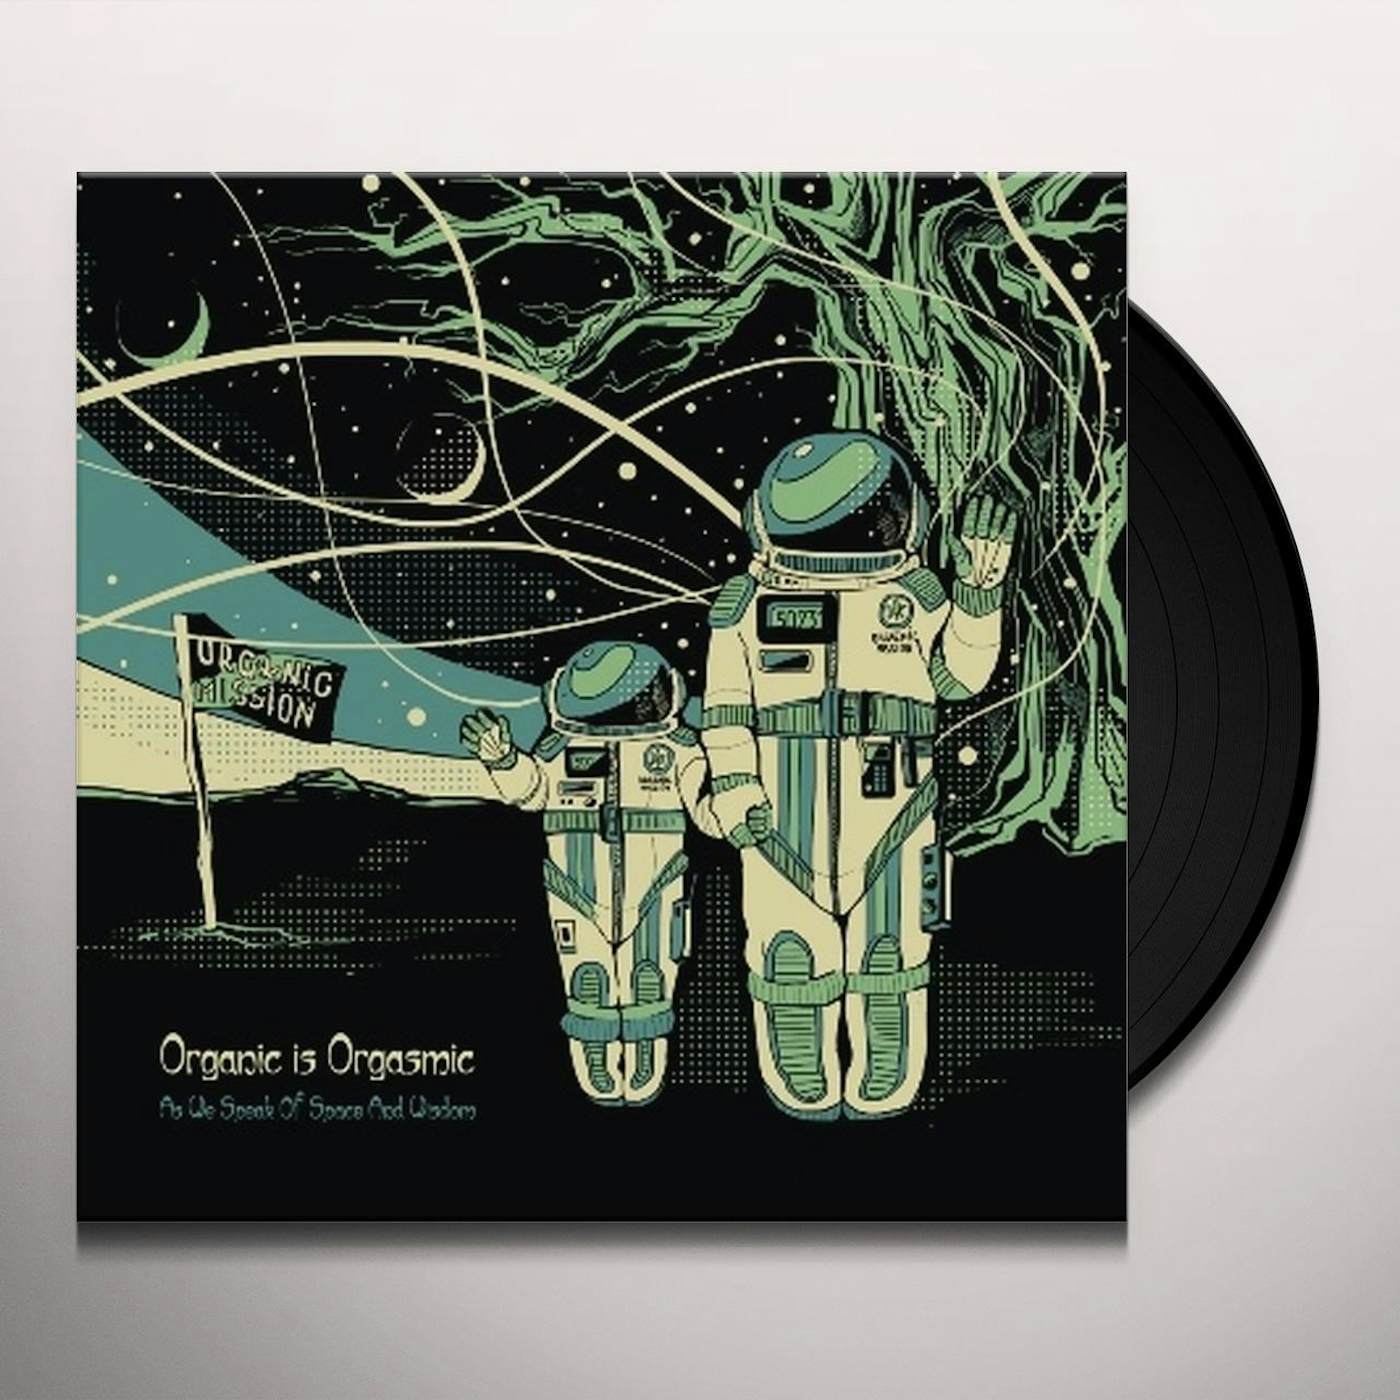 Organic Is Orgasmic As We Speak of Space and Wisdom Vinyl Record